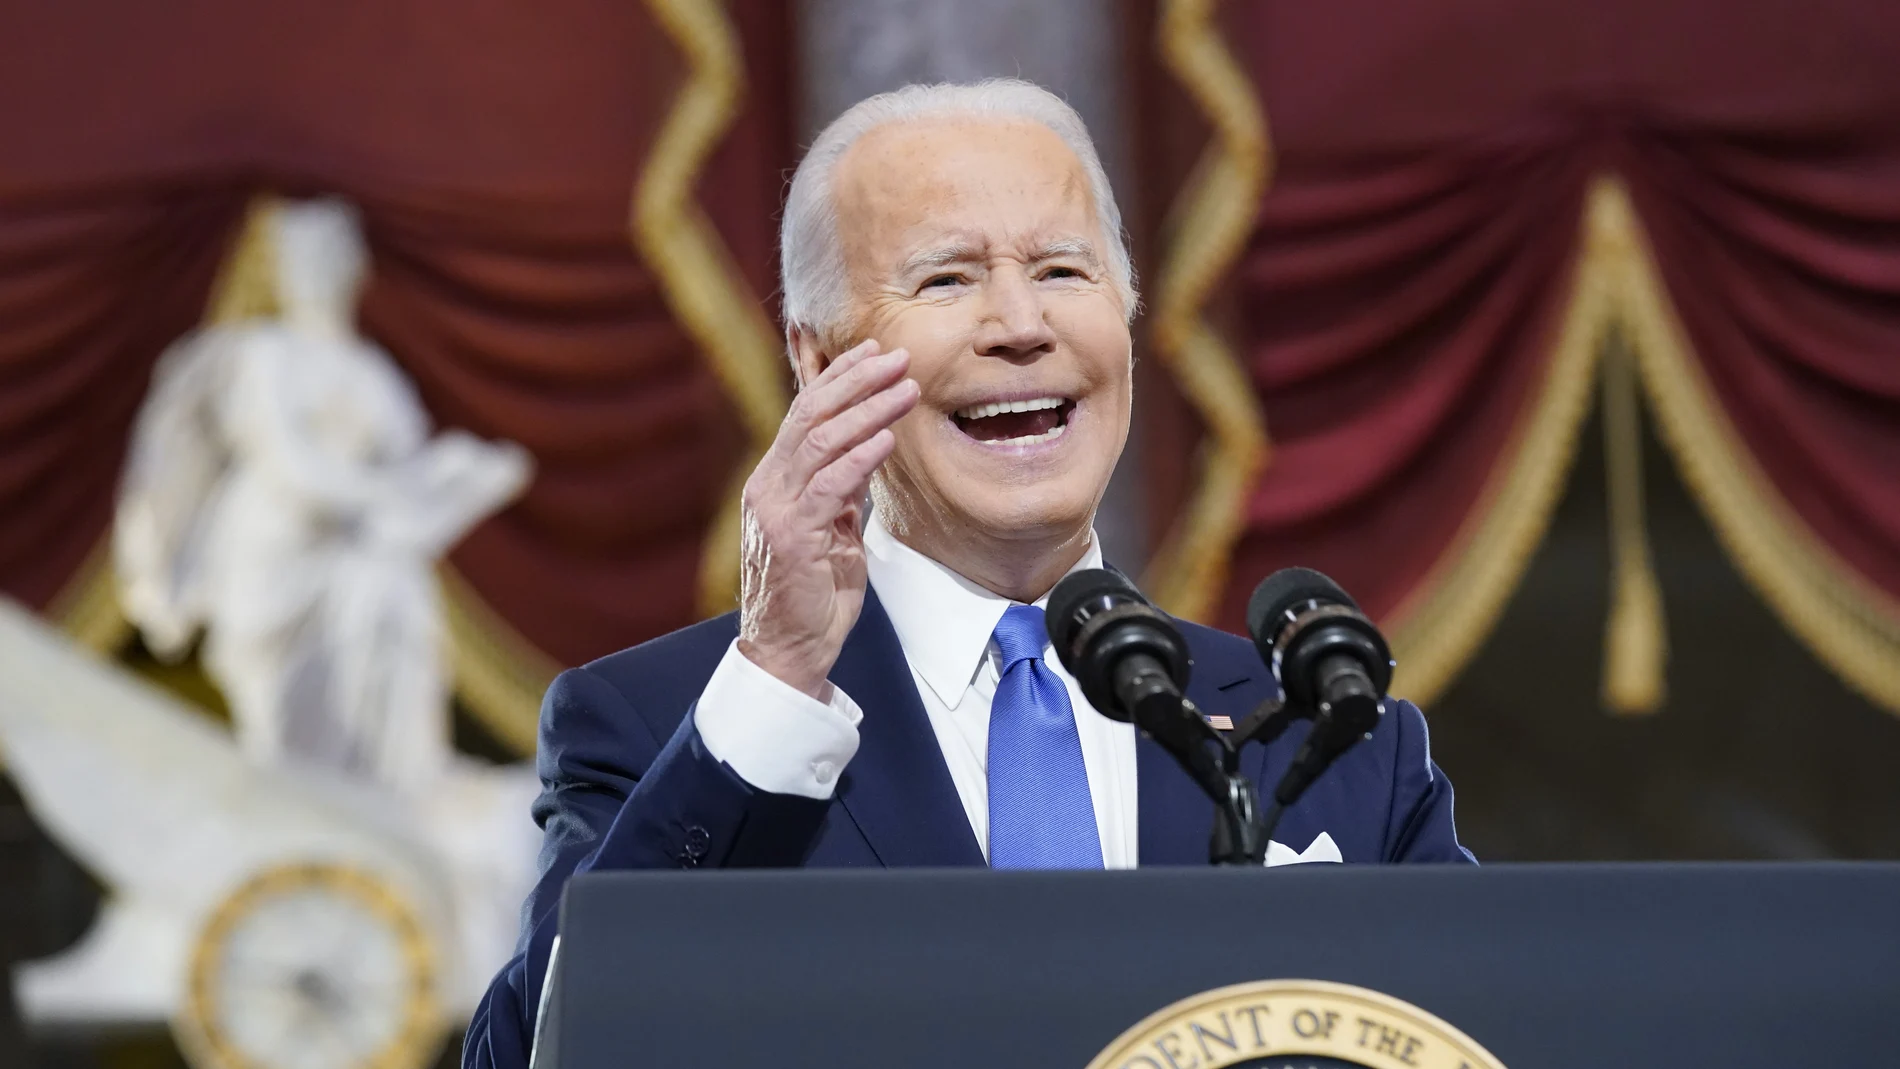 El presidente Joe Biden pronuncia su rotundo discurso desde el Statuary Hall del Capitolio durante el aniversario del asalto